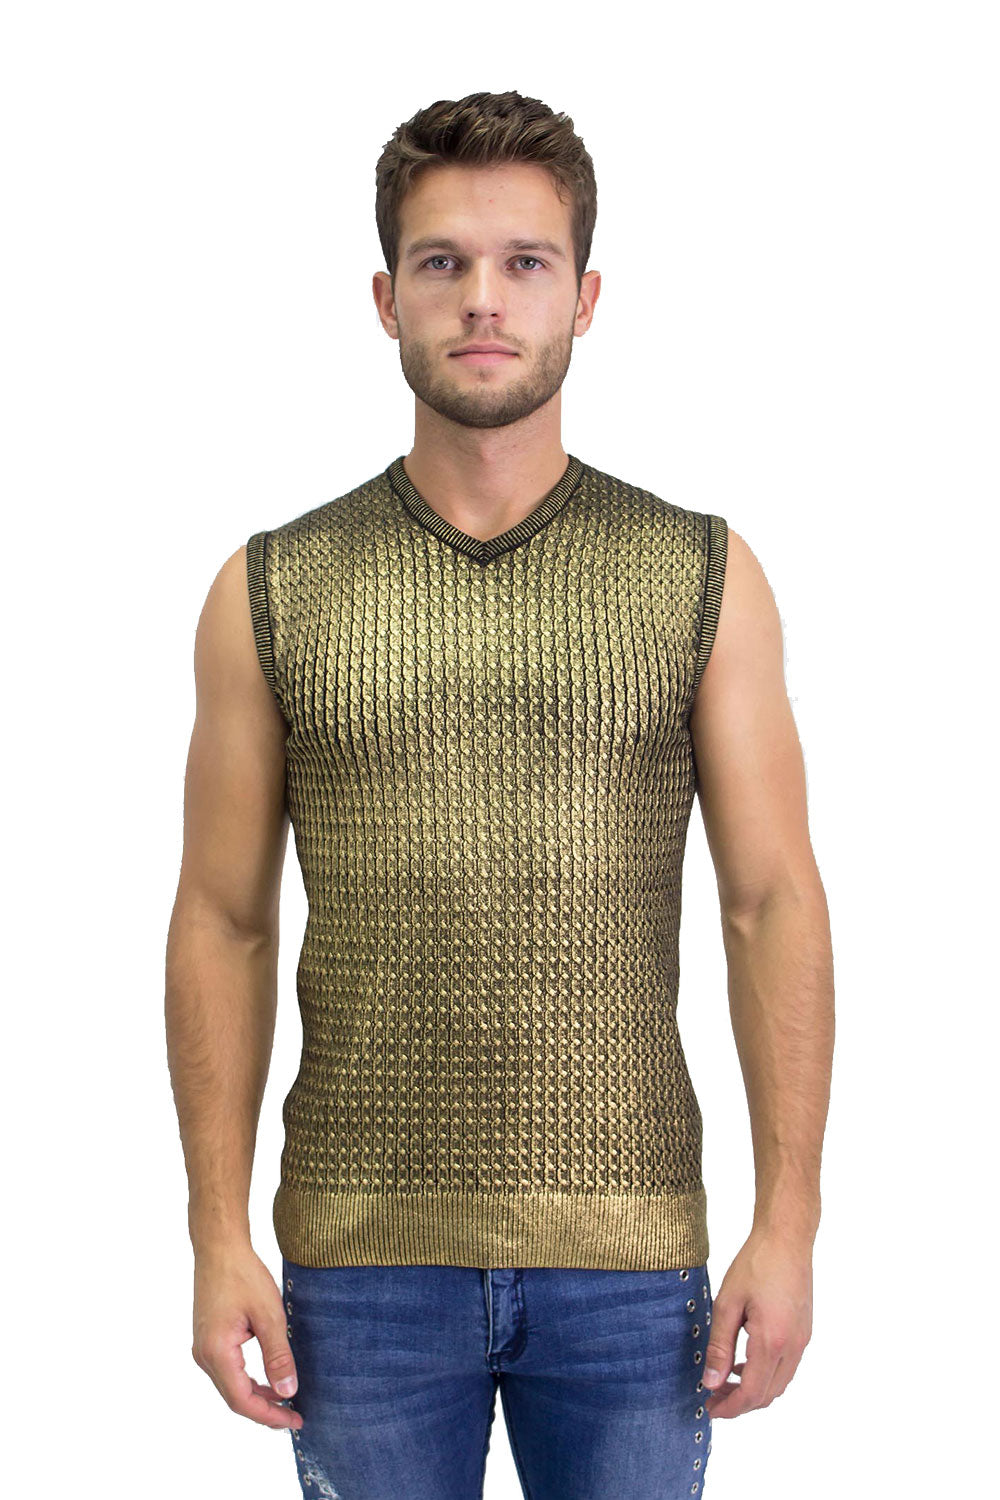 BARABAS Men's Shiny Sleeveless Fisherman Knitted Sweater Vest WV201 Gold